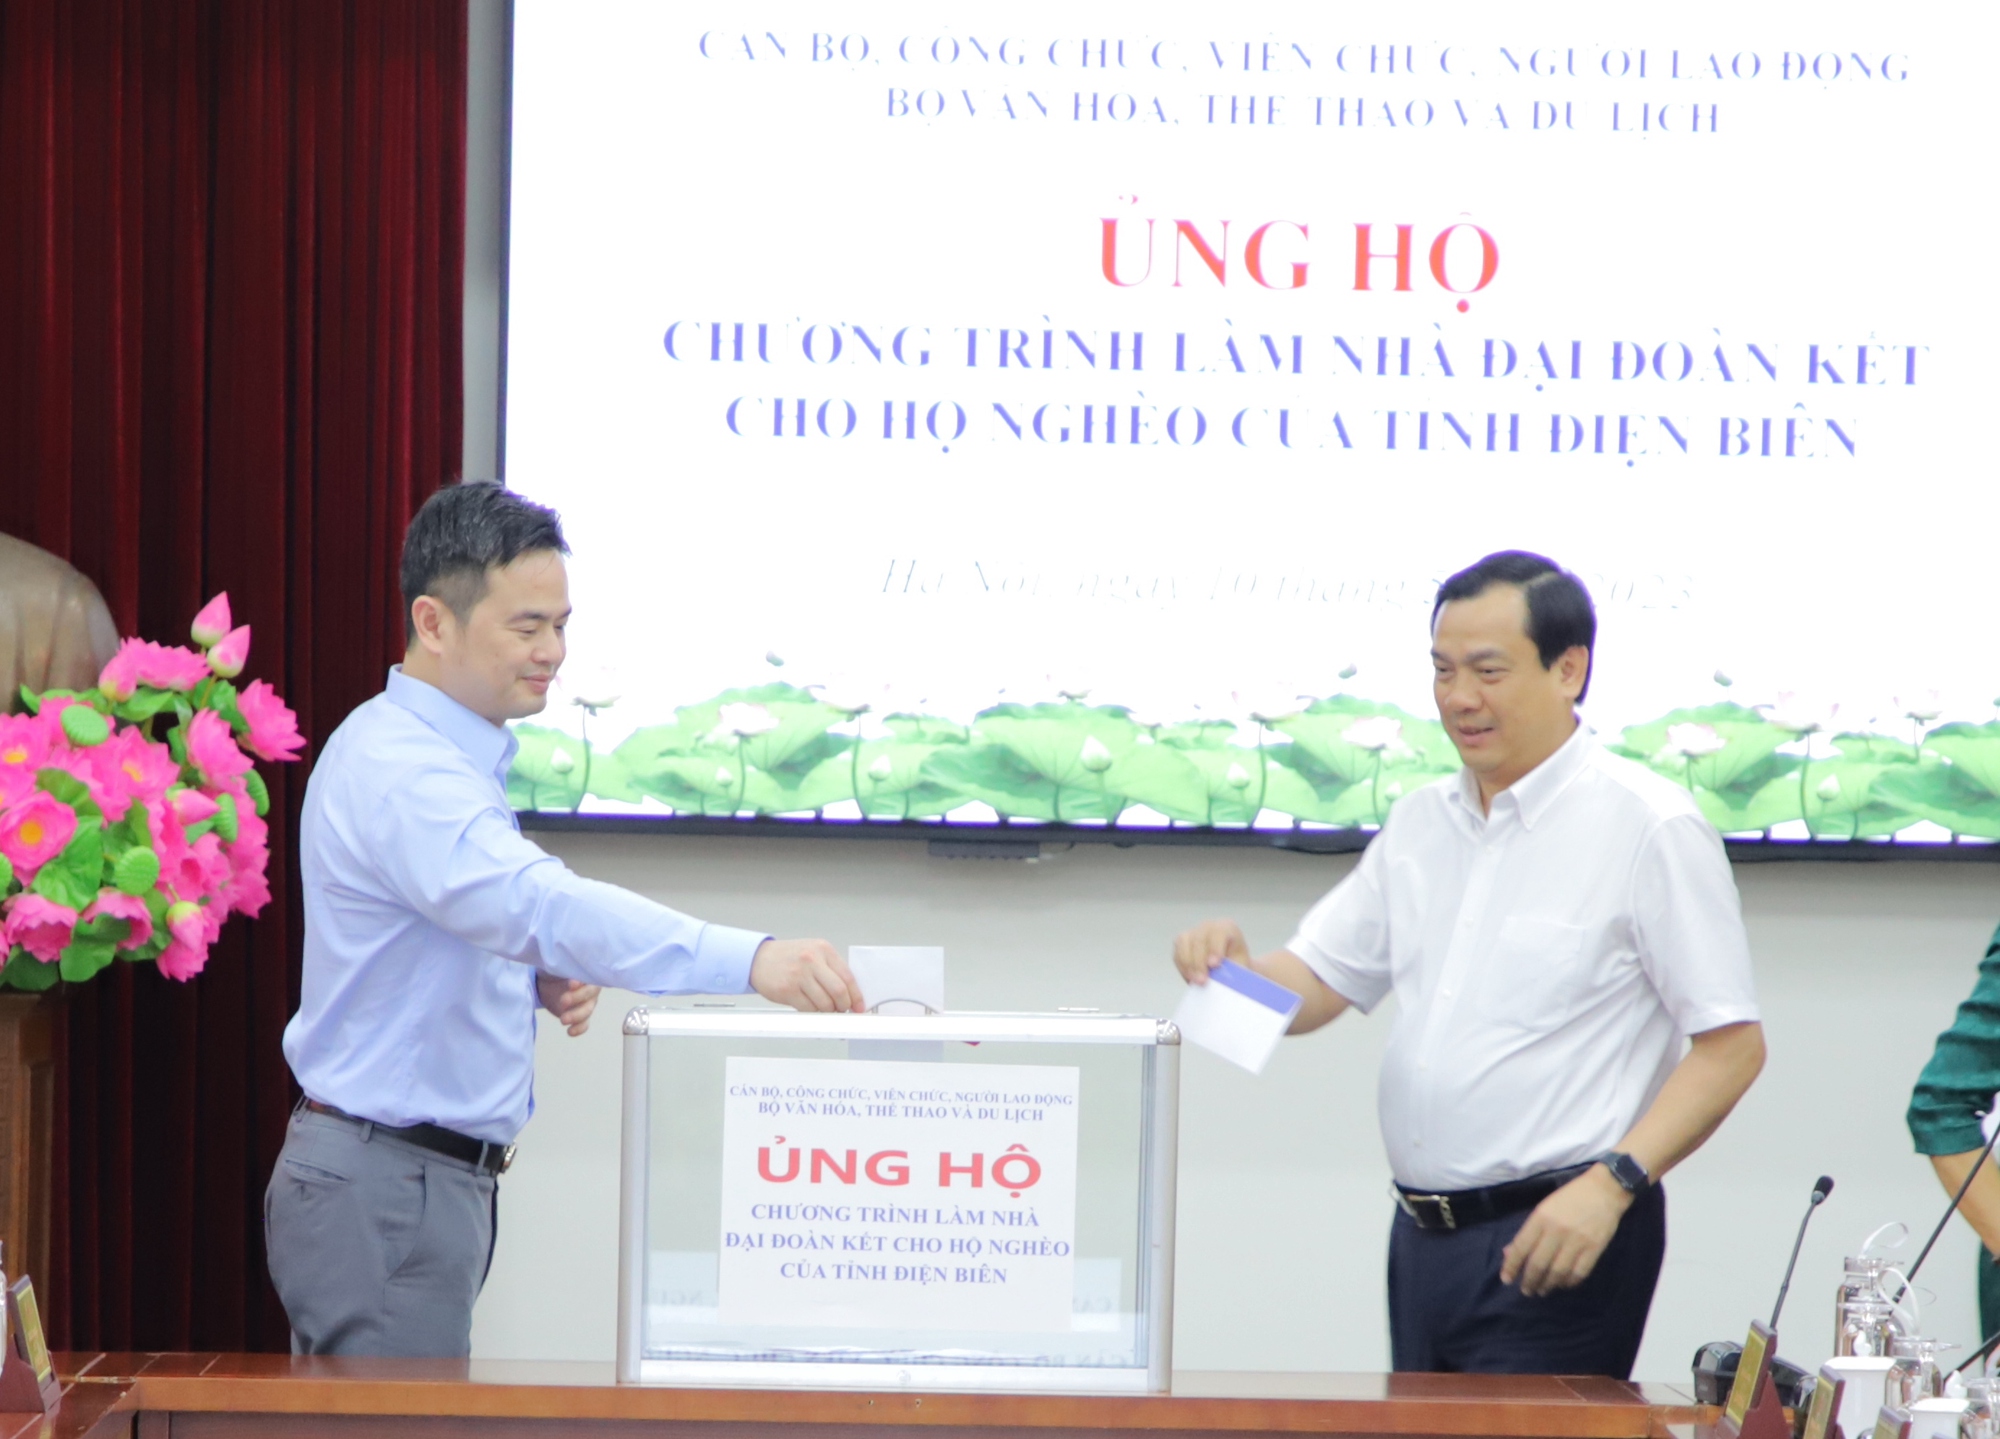 Bộ VHTTDL ủng hộ Chương trình xây nhà đại đoàn kết cho hộ nghèo của tỉnh Điện Biên - Ảnh 5.